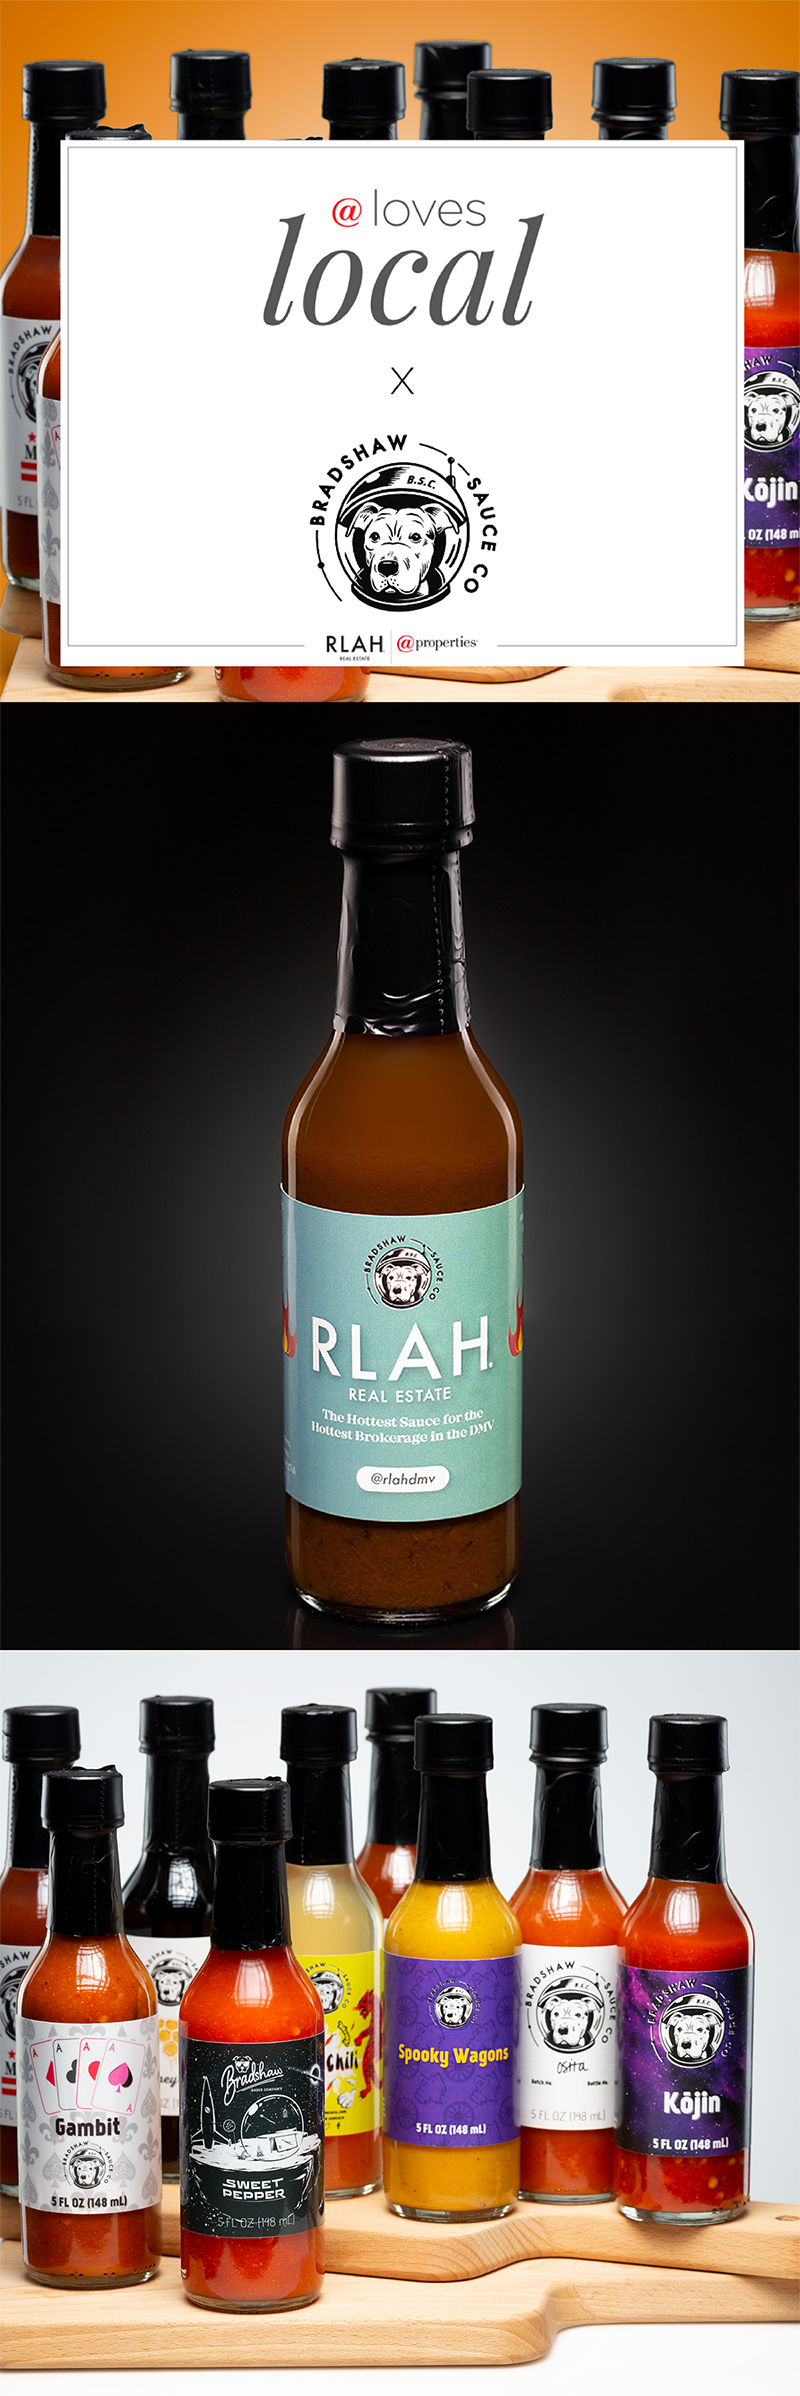 The RLAH Hot Sauce